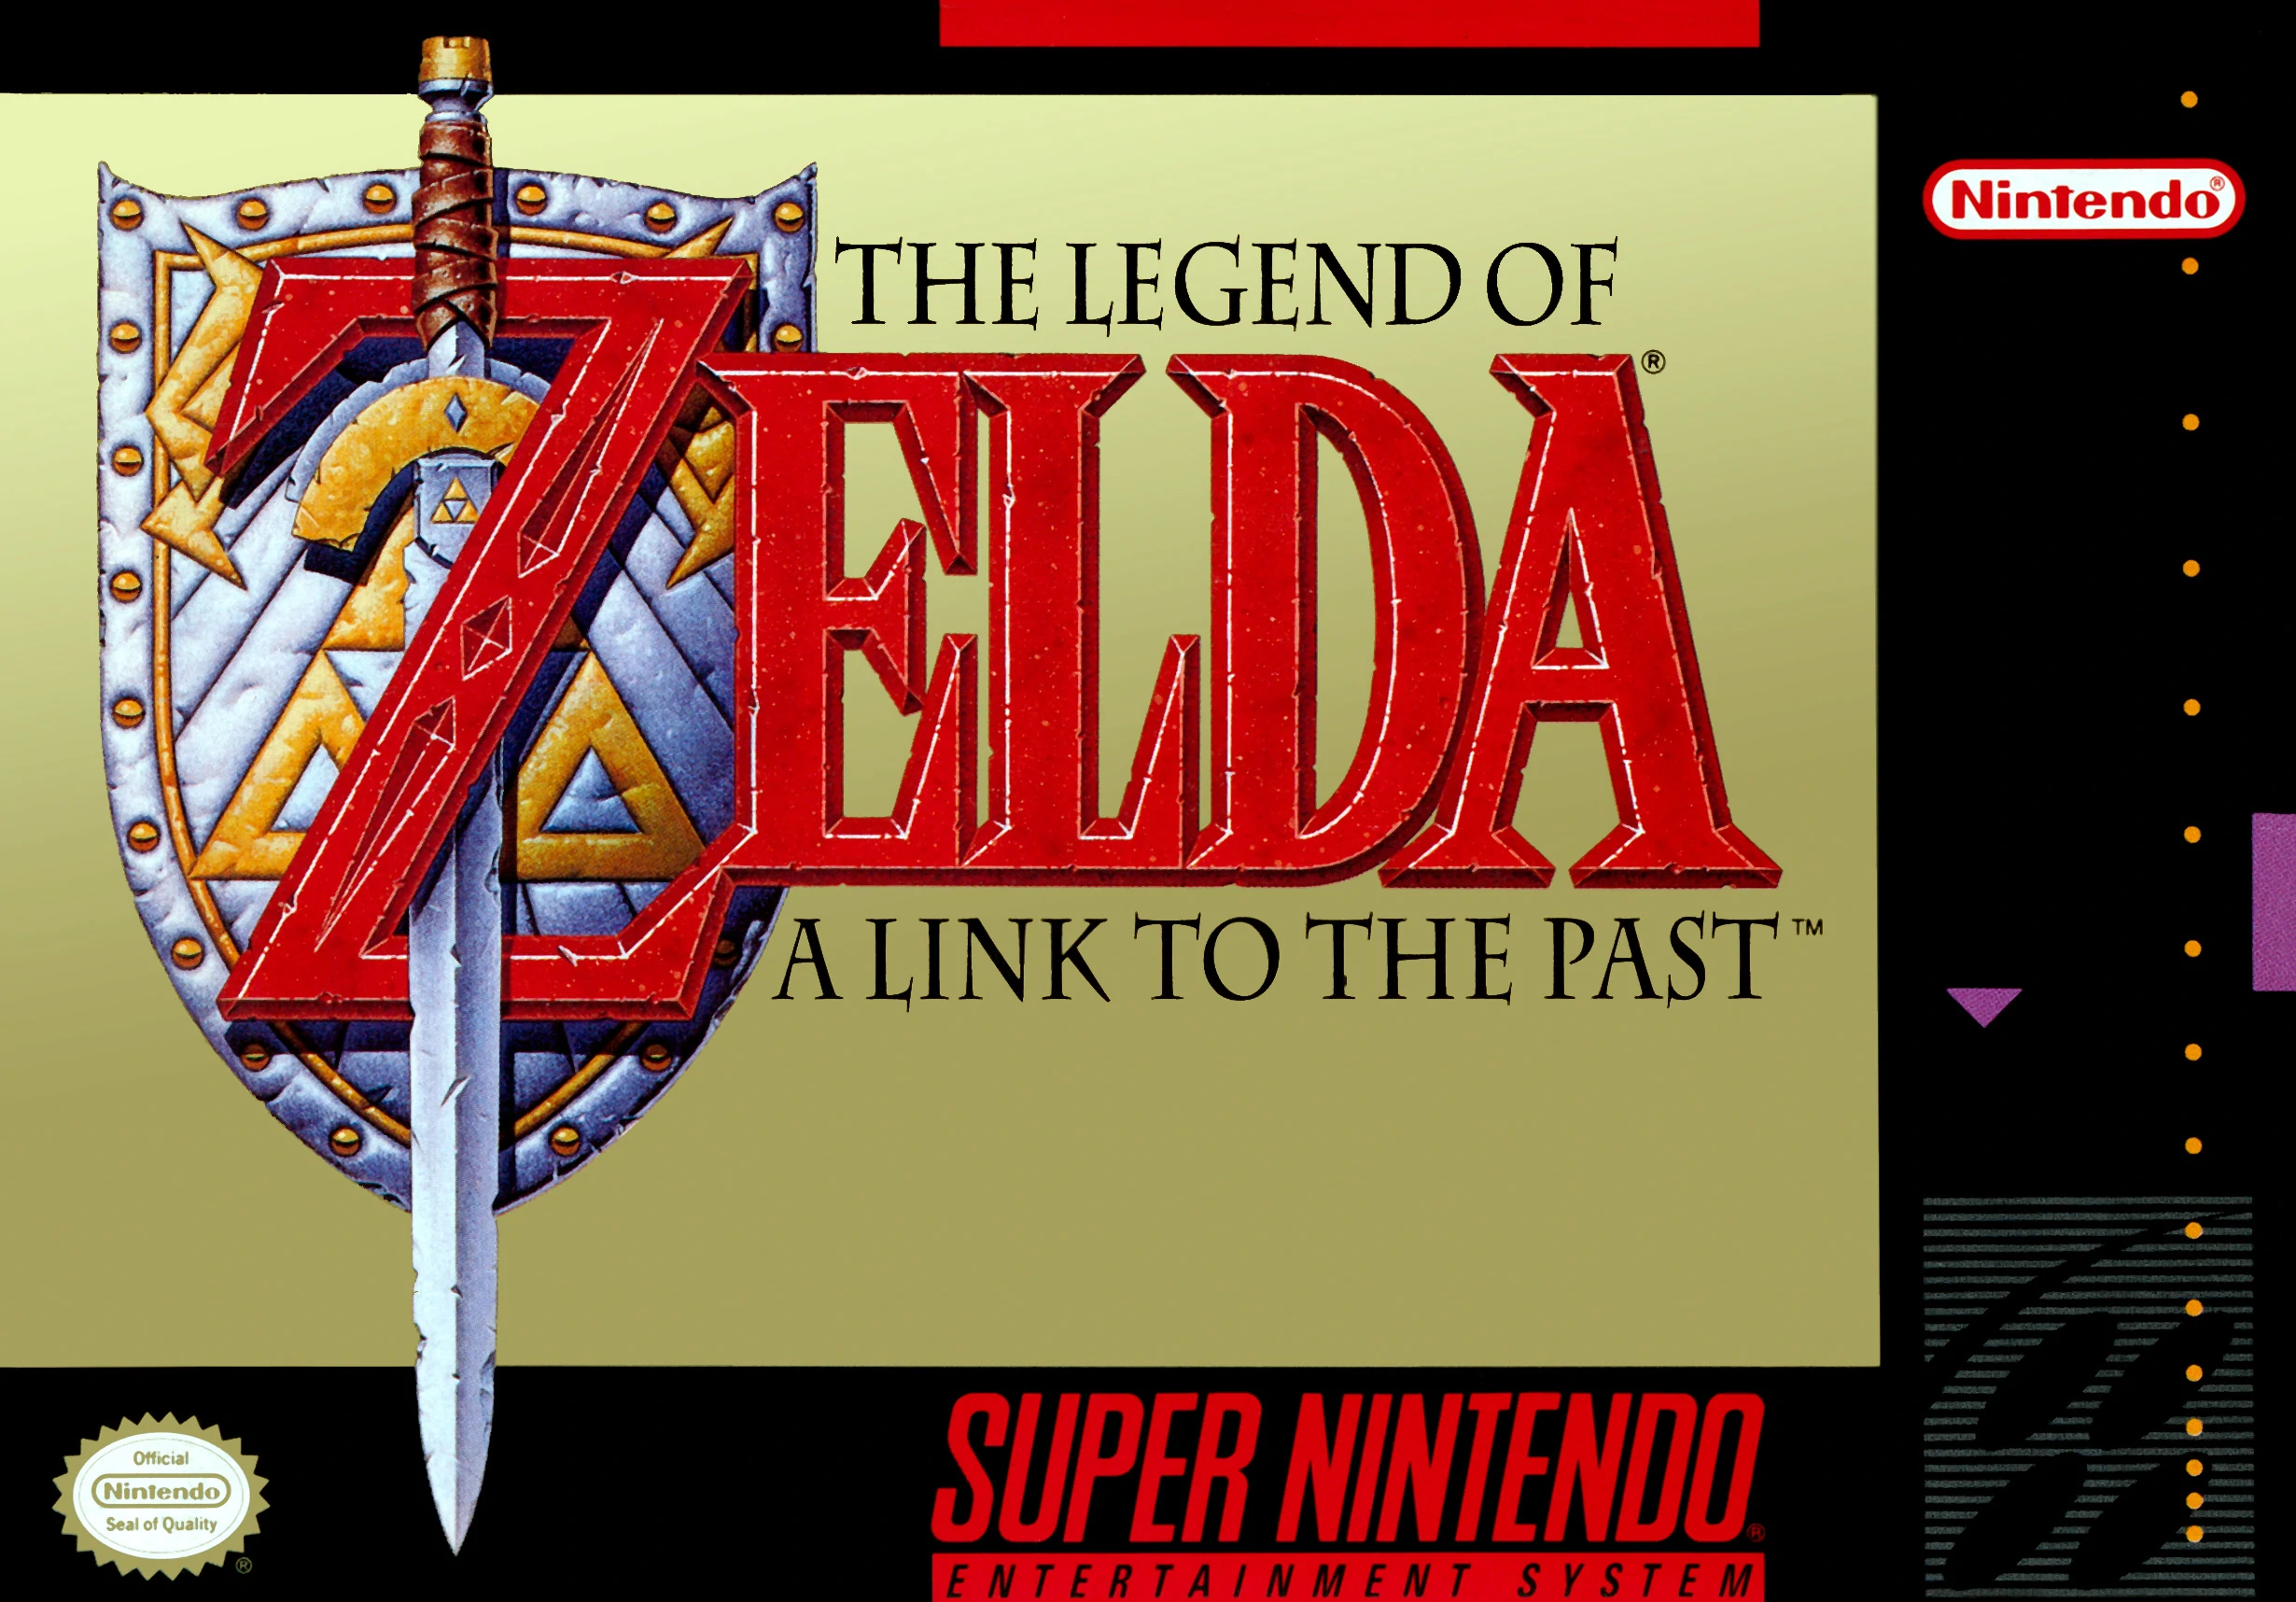 Zelda - Link's Awakening Hack WIP (update thread)